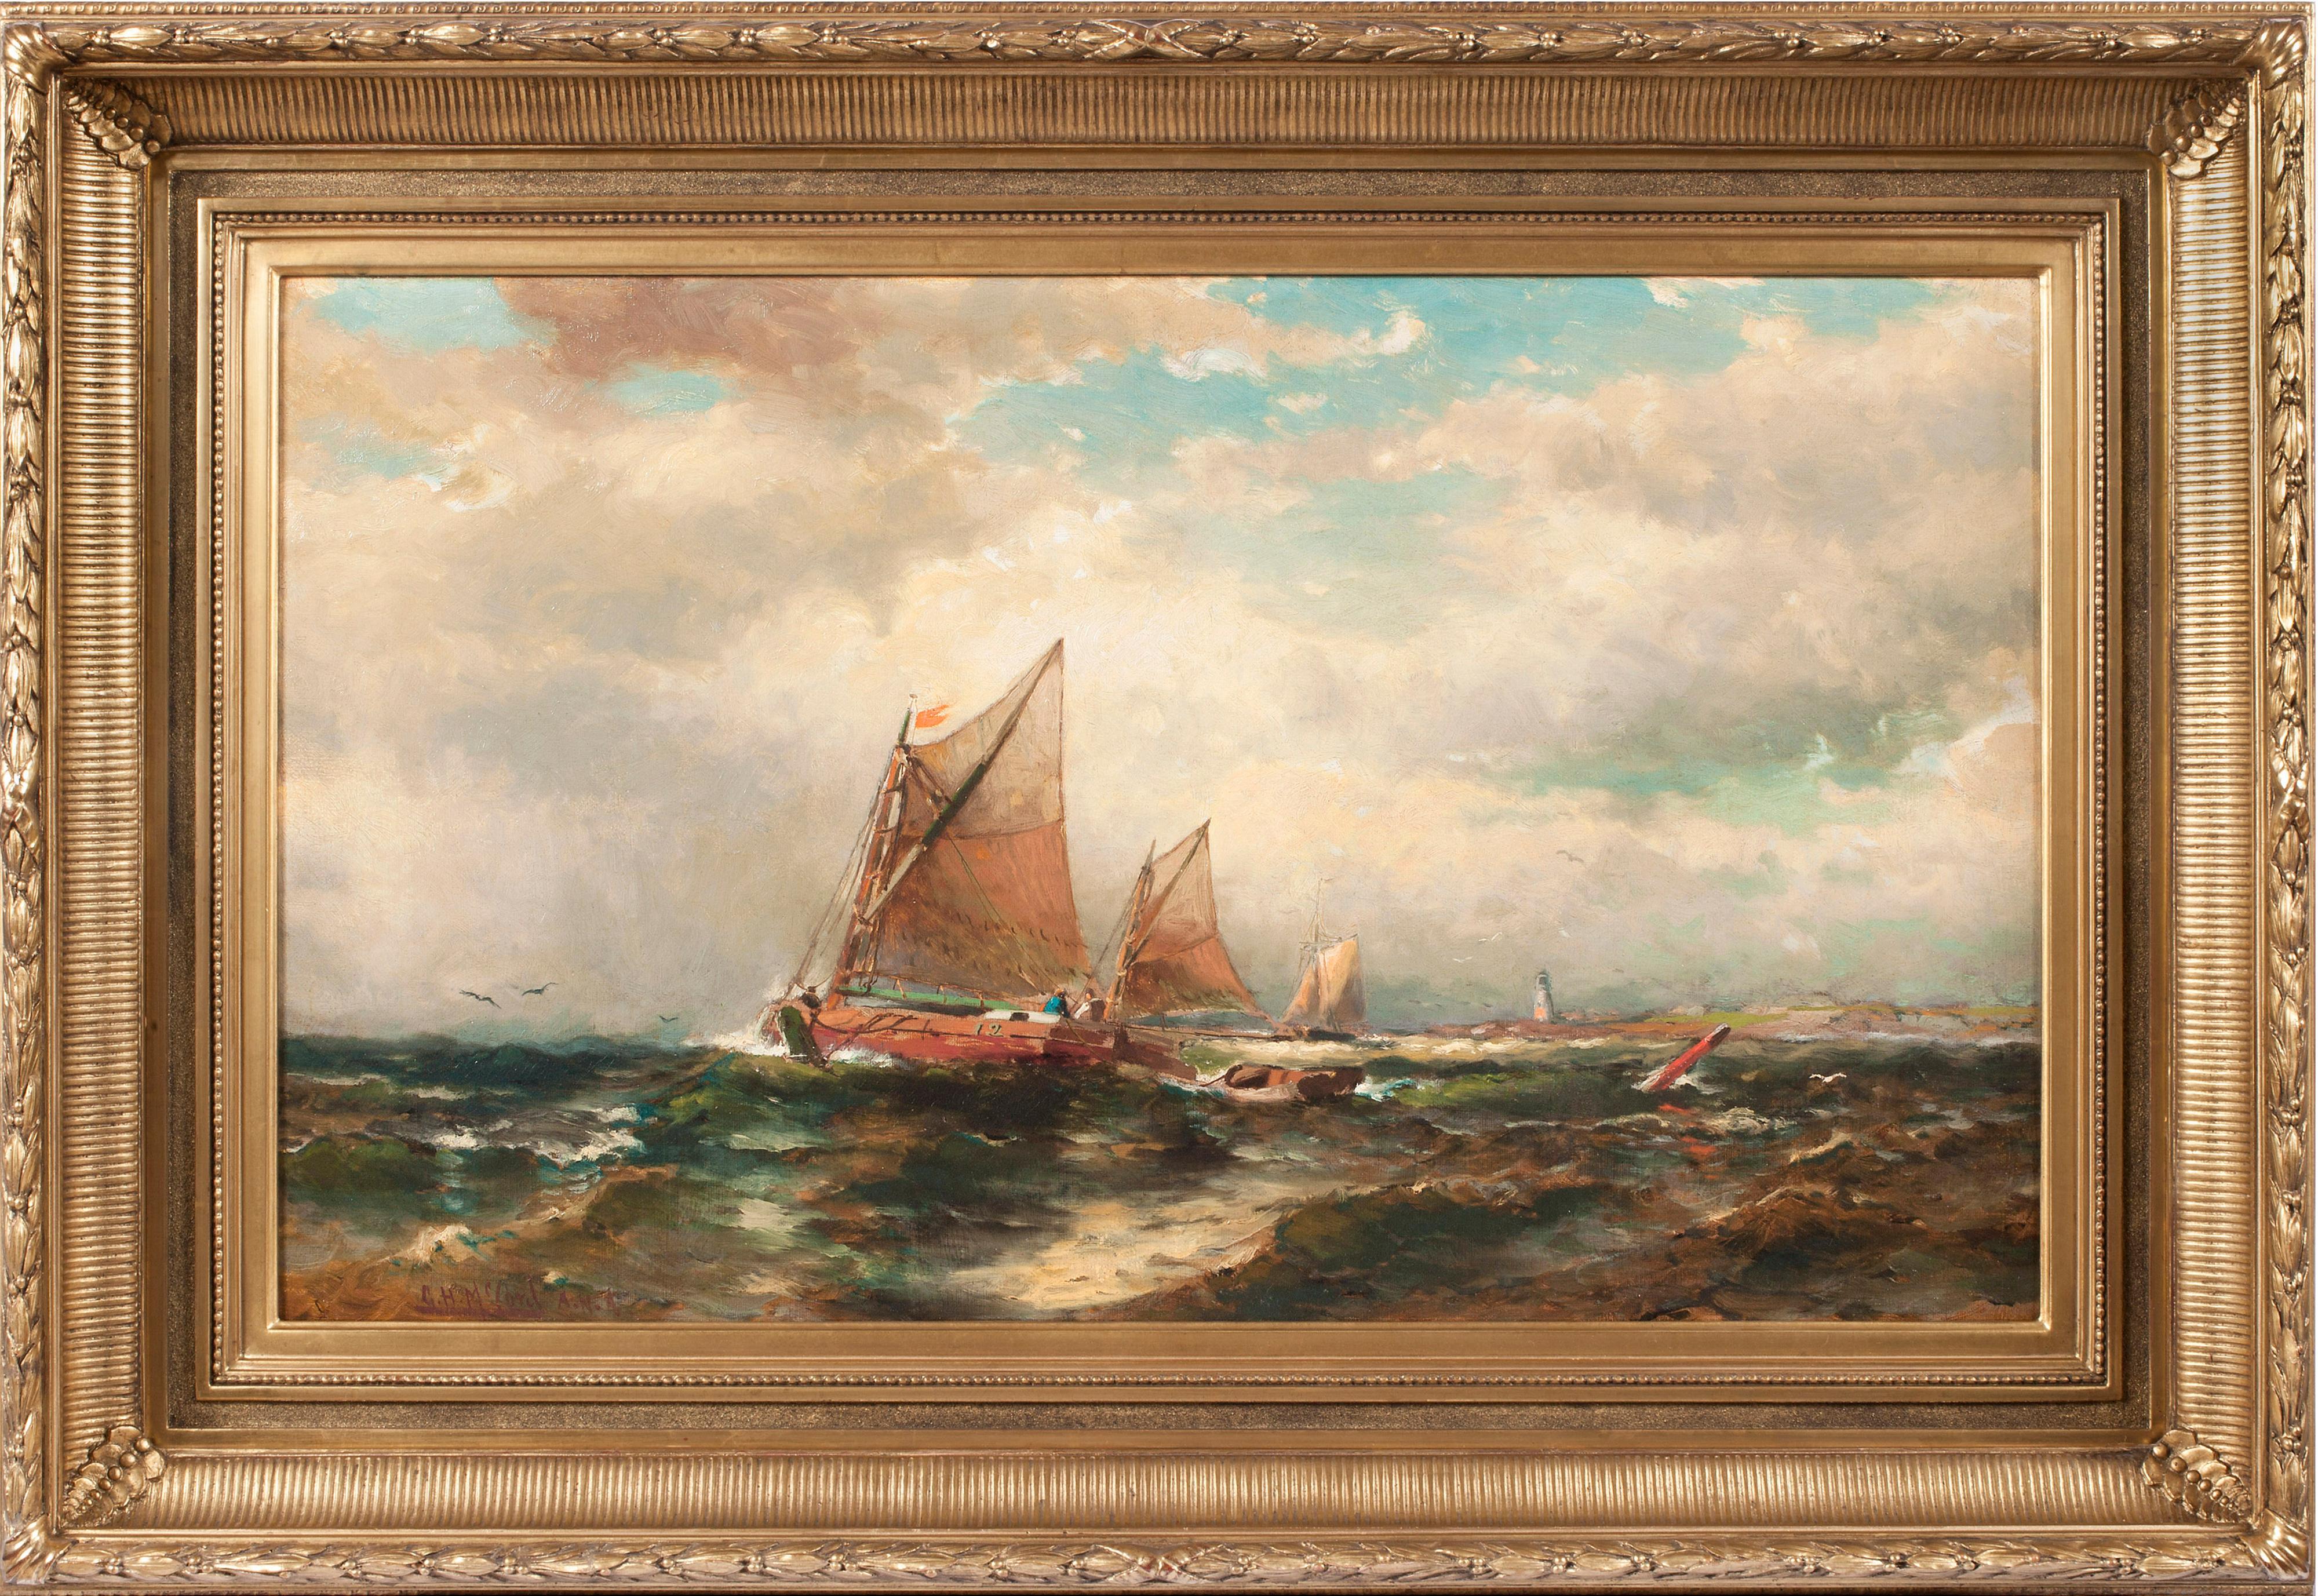 "Seascape", de l'artiste George Herbert McCord (1848-1909) de l'école de la rivière Hudson, est une huile sur toile et mesure 18,07 x 30,13 pouces. L'œuvre, qui provient d'une Collectional de Birmingham, Alabama, est signée "G.H. McCord A.N.A." en